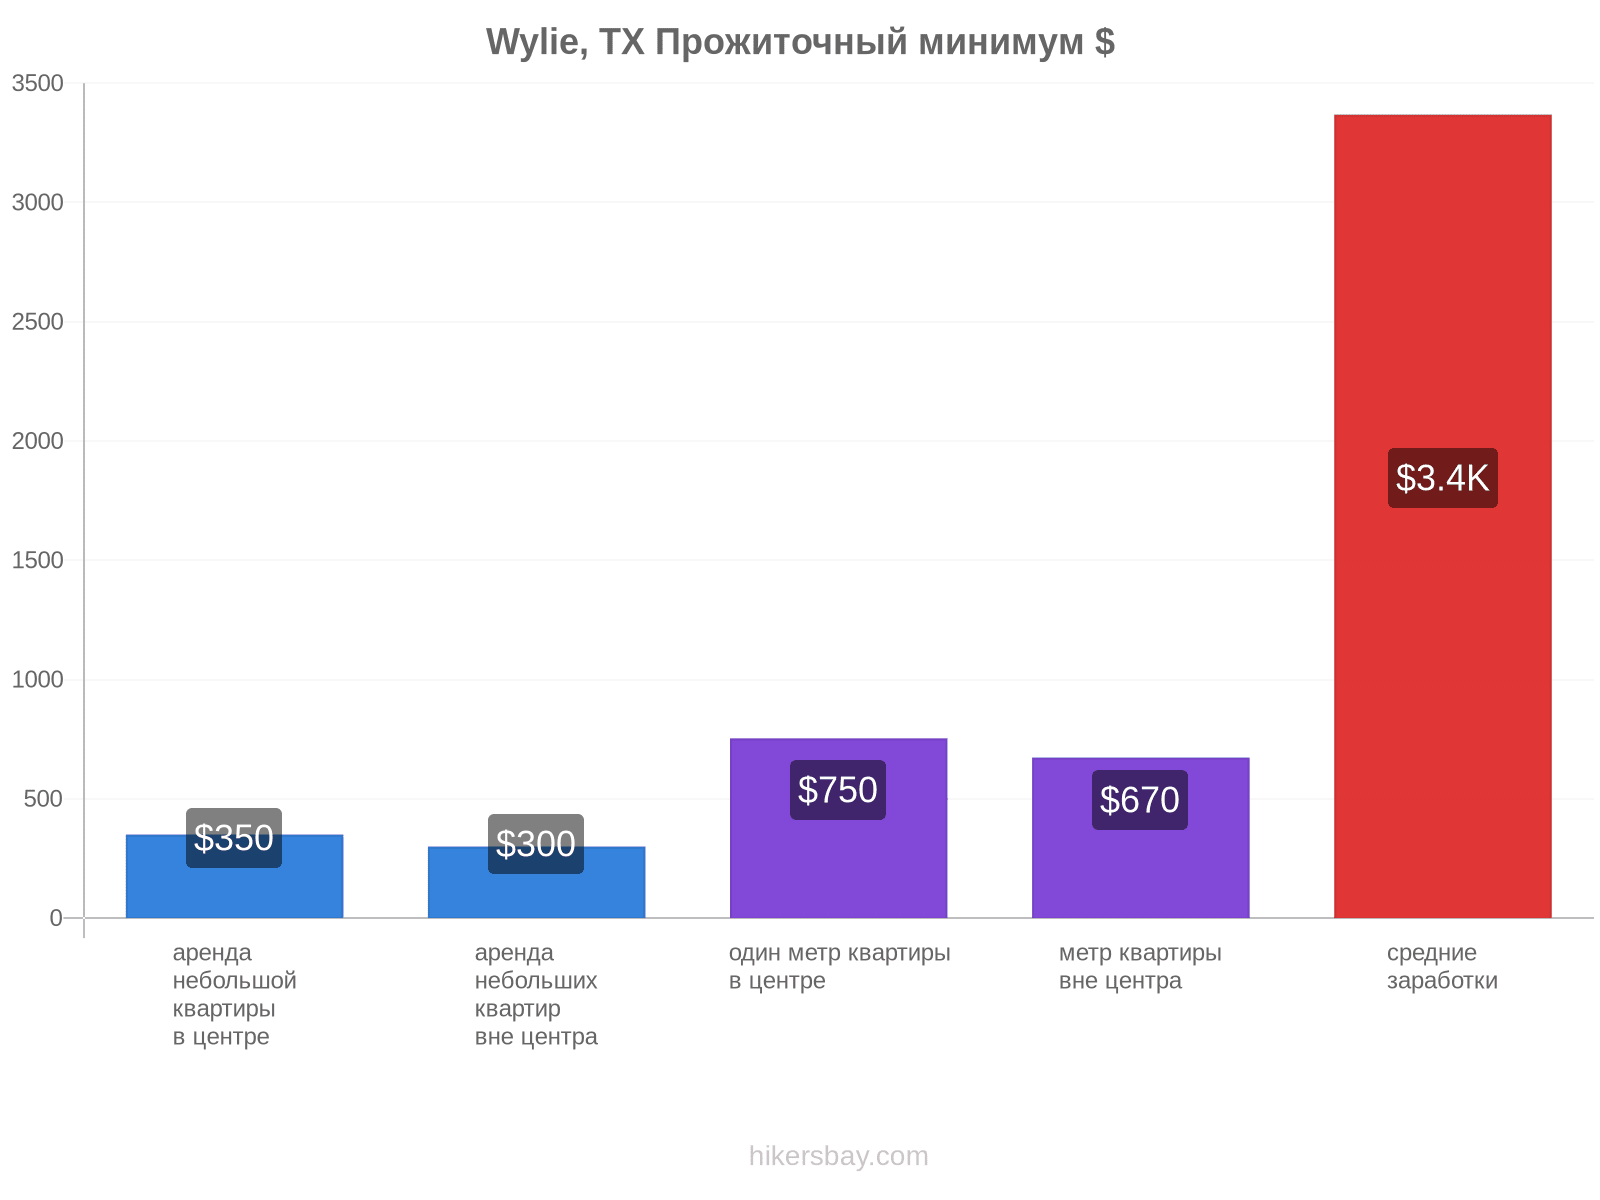 Wylie, TX стоимость жизни hikersbay.com